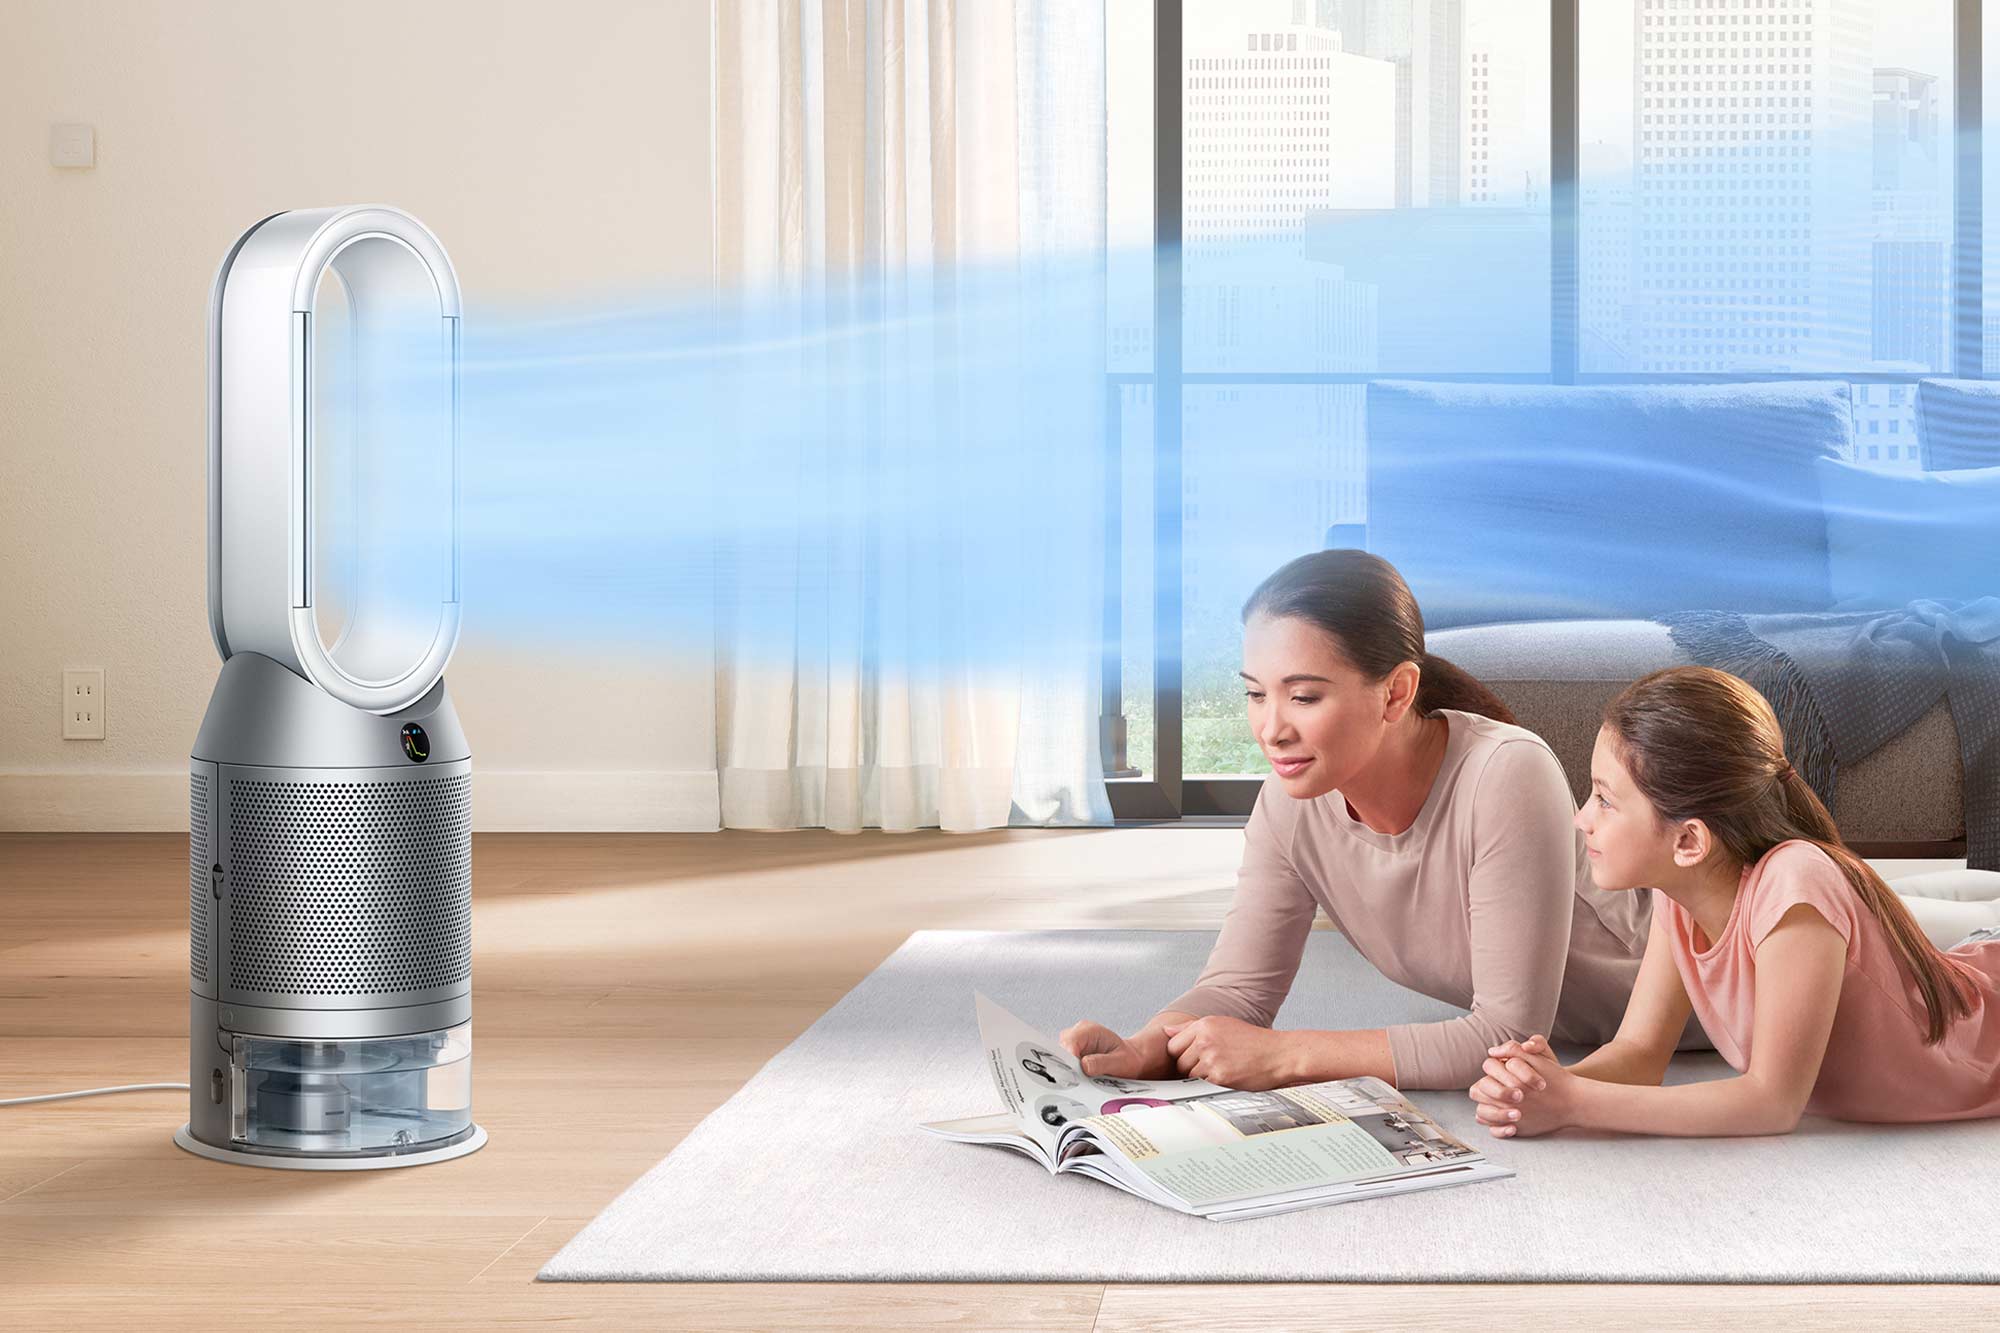 Un purificateur d'air rendra votre environnement plus sain - Blogue Best Buy